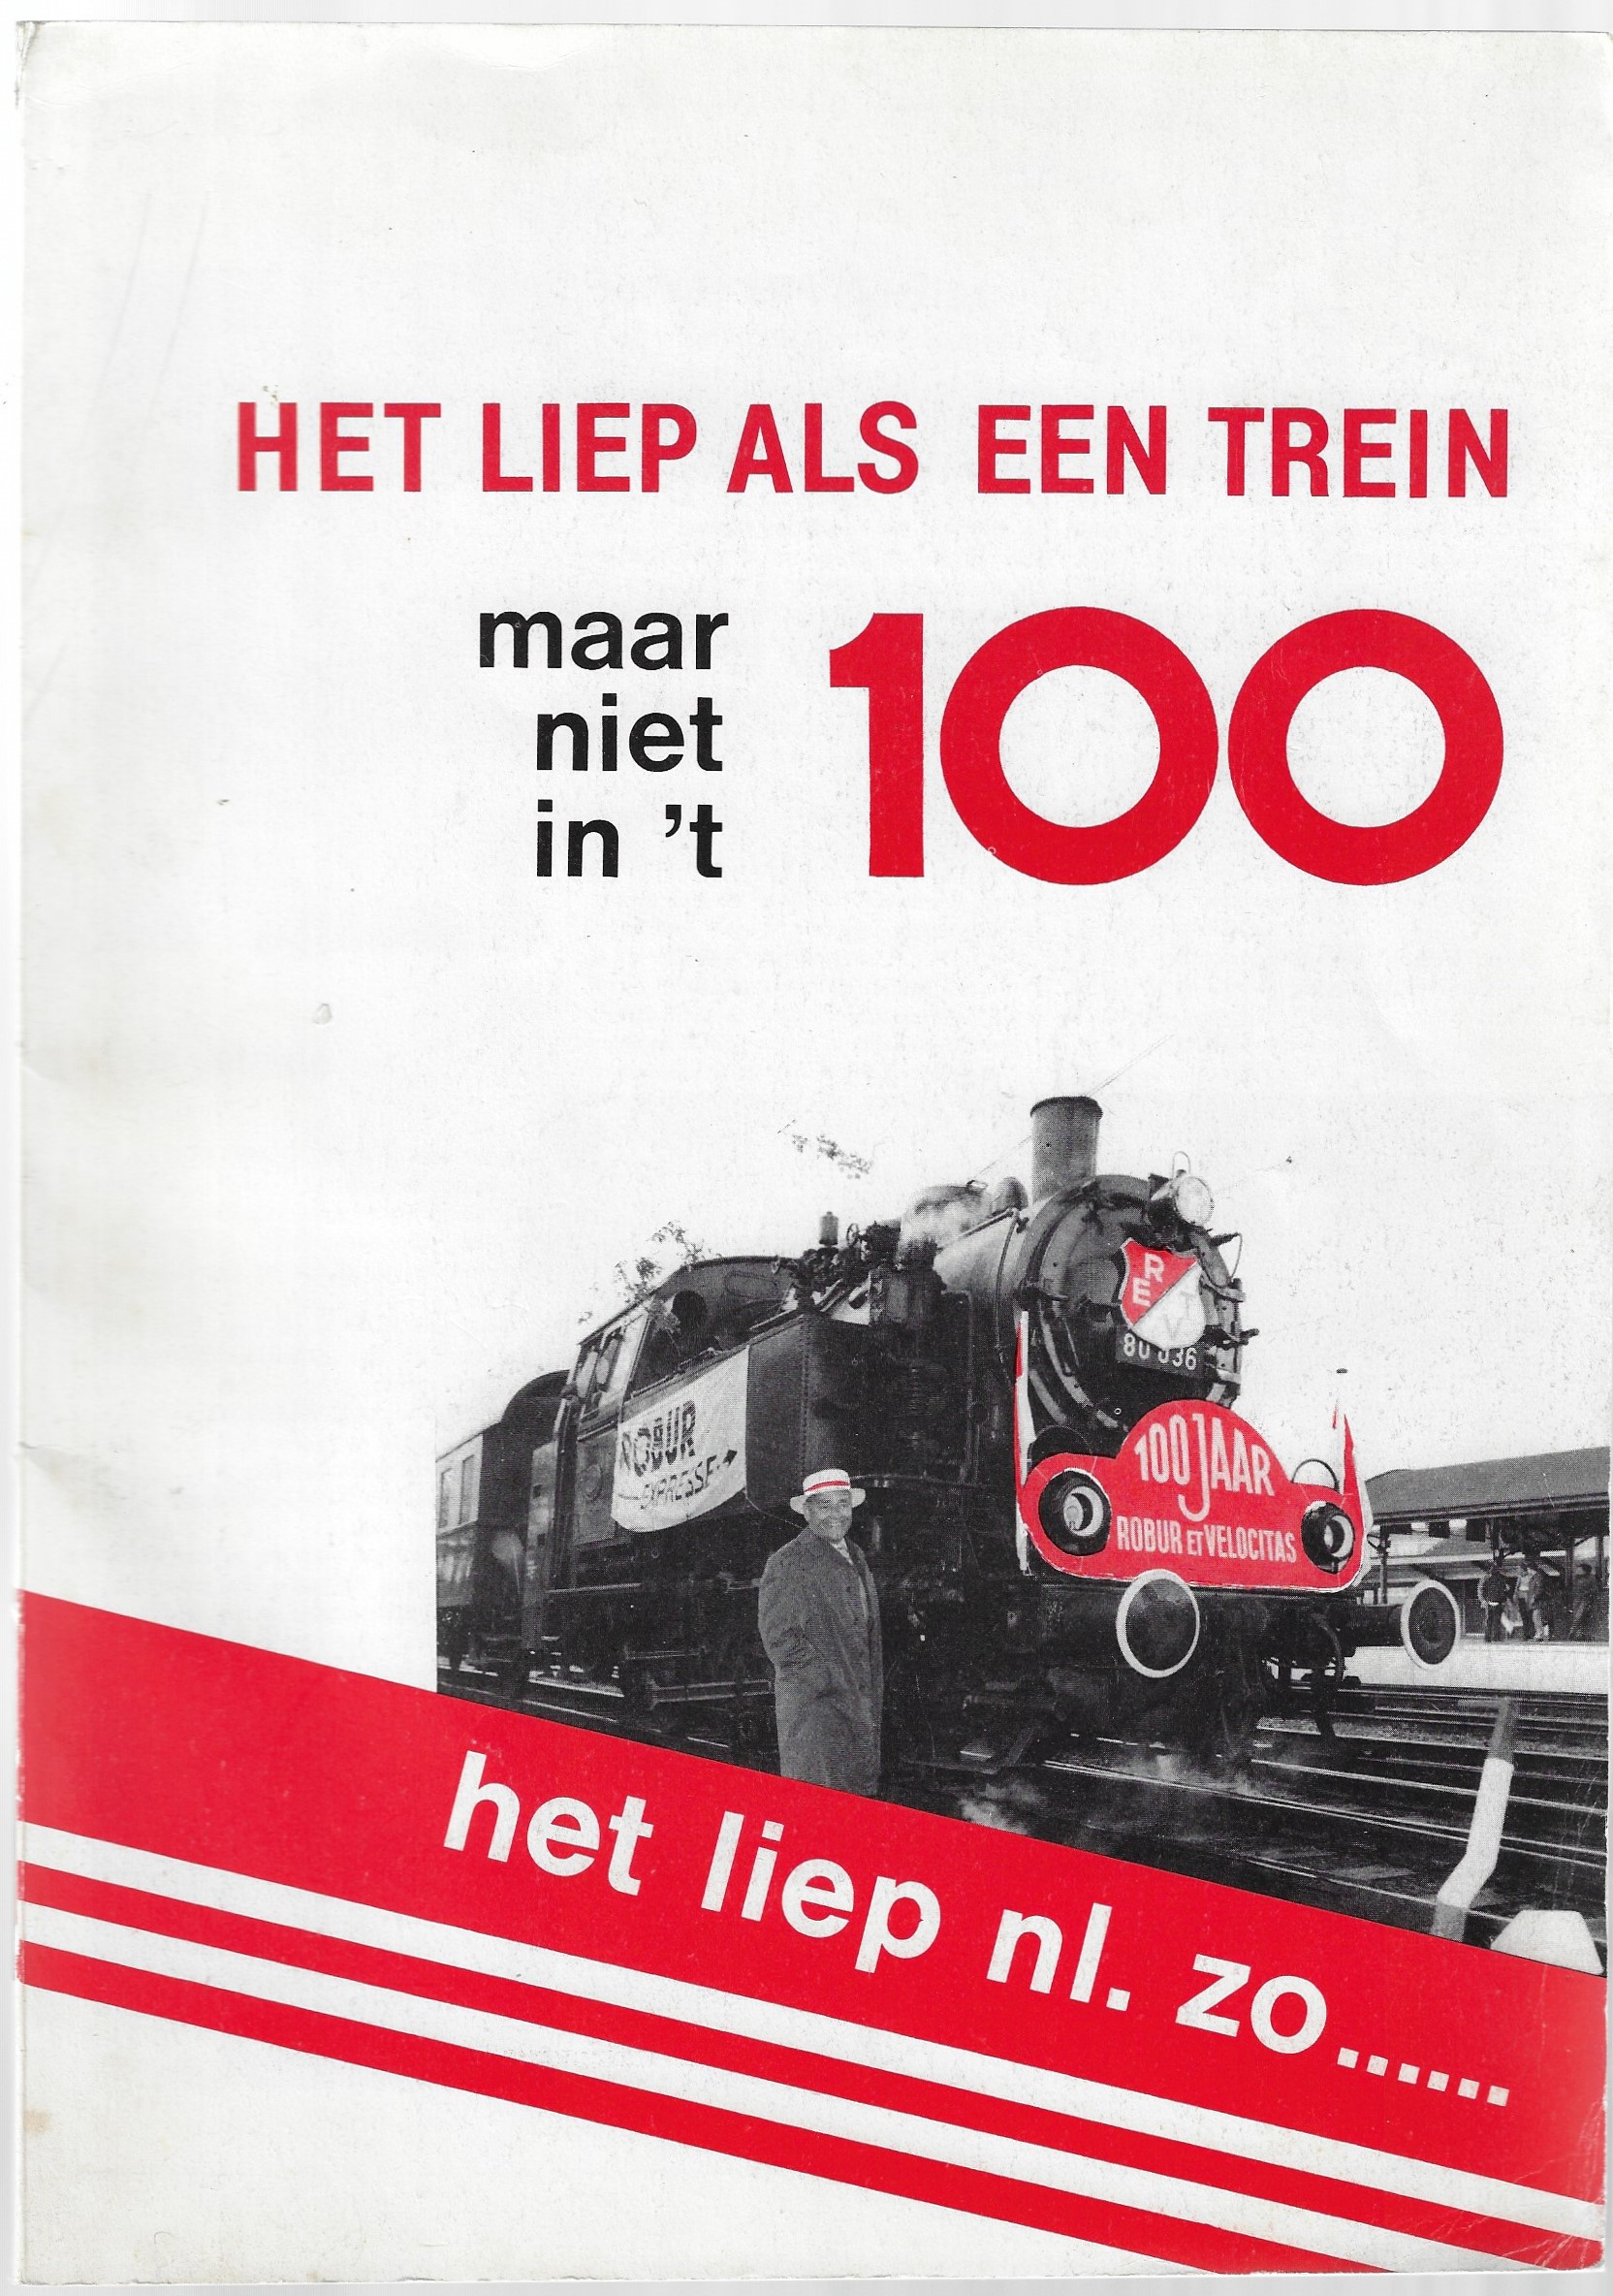 Widt, Cor de - Het liep als een trein maar niet in 't 100 - 100 jaar 'Robur et Velocitas' -het liep nl. zo......